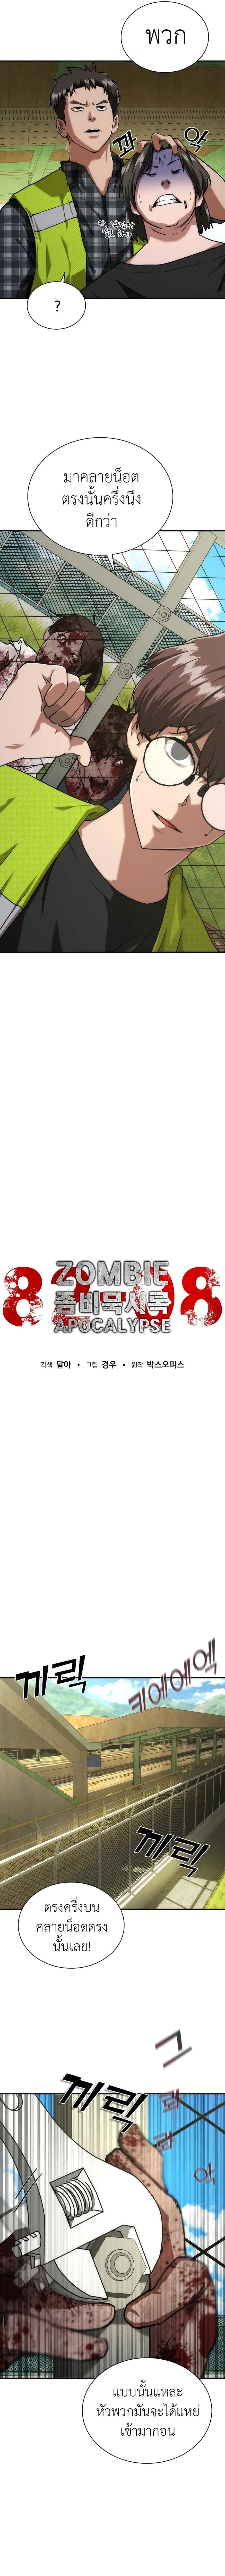 Zombie Apocalypse 82-08 11-11